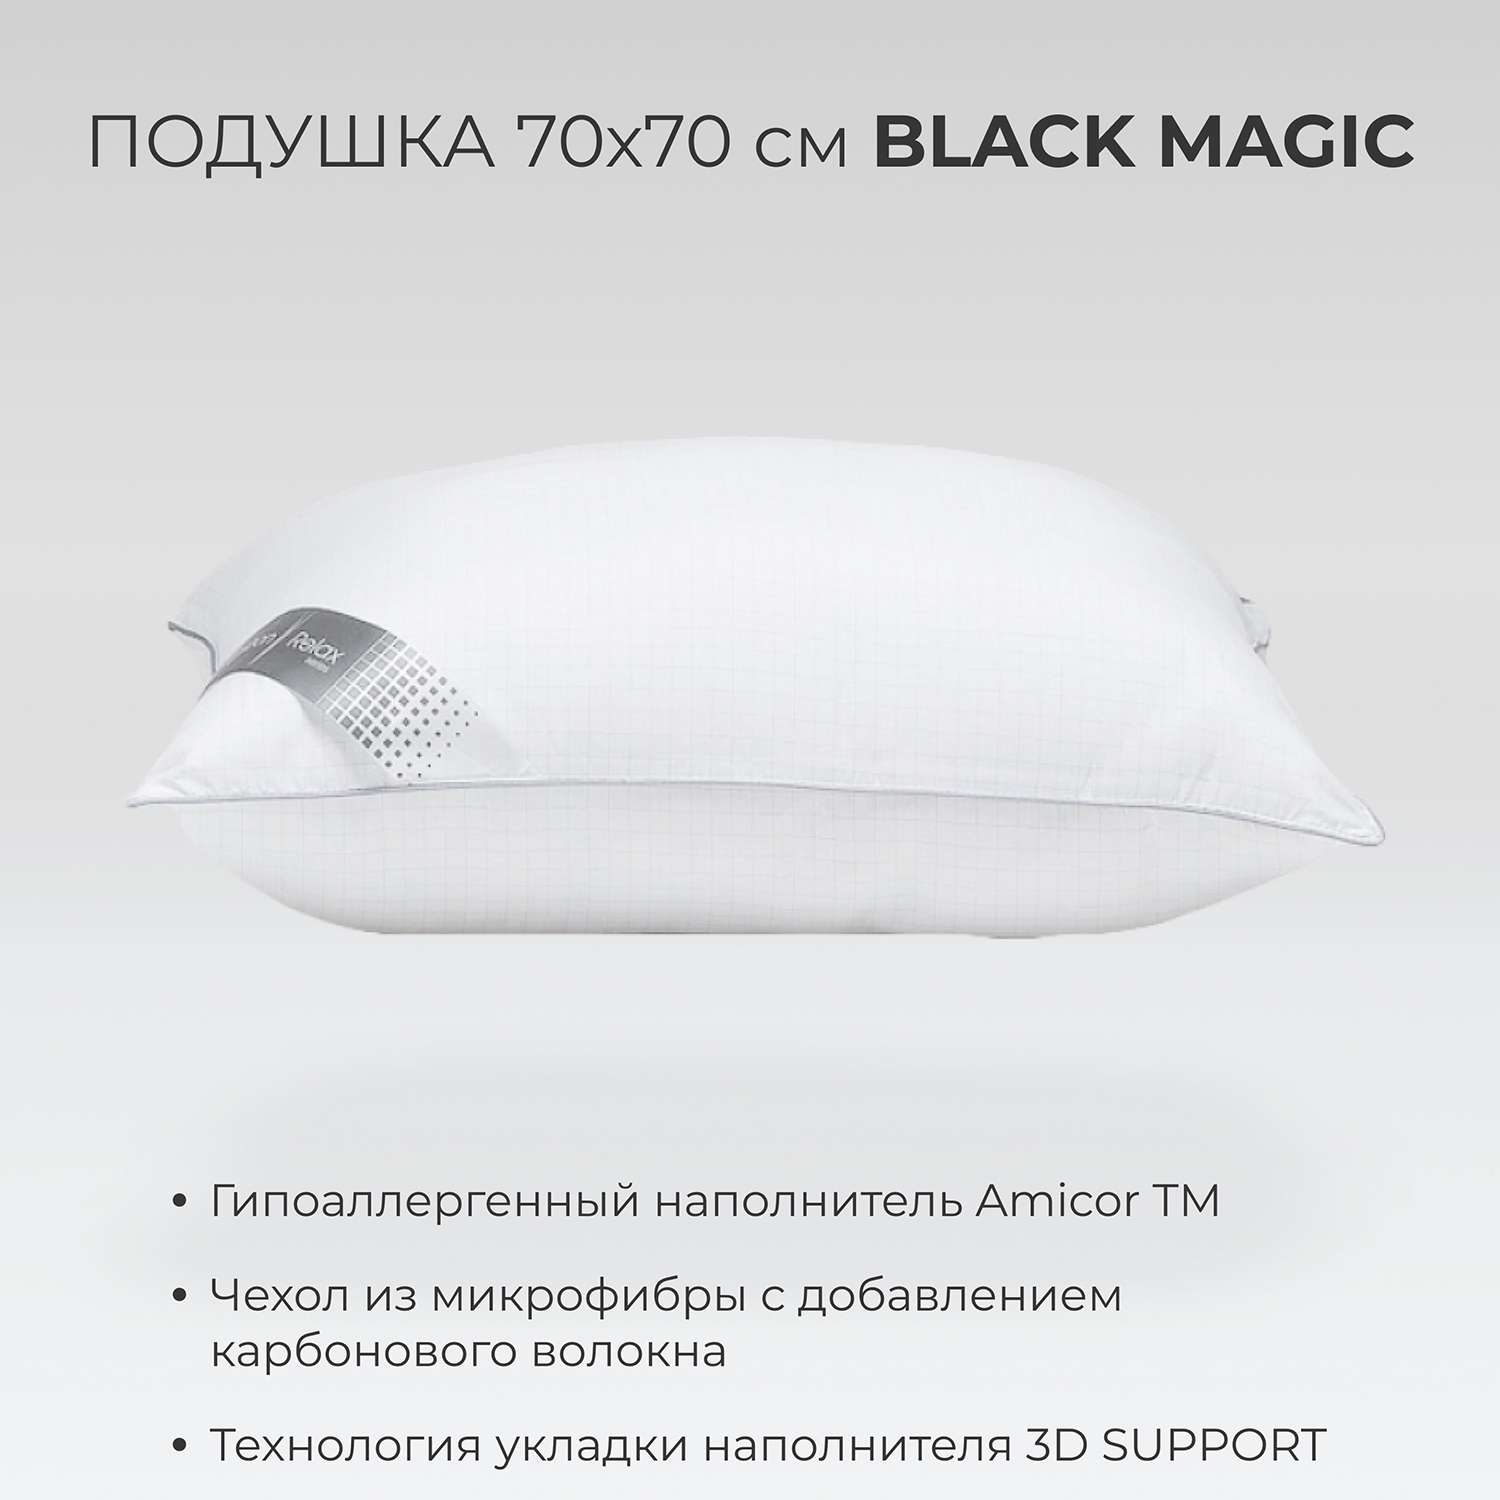 Подушка SONNO BLACK MAGIC 70x70 см Amicor TM - фото 2